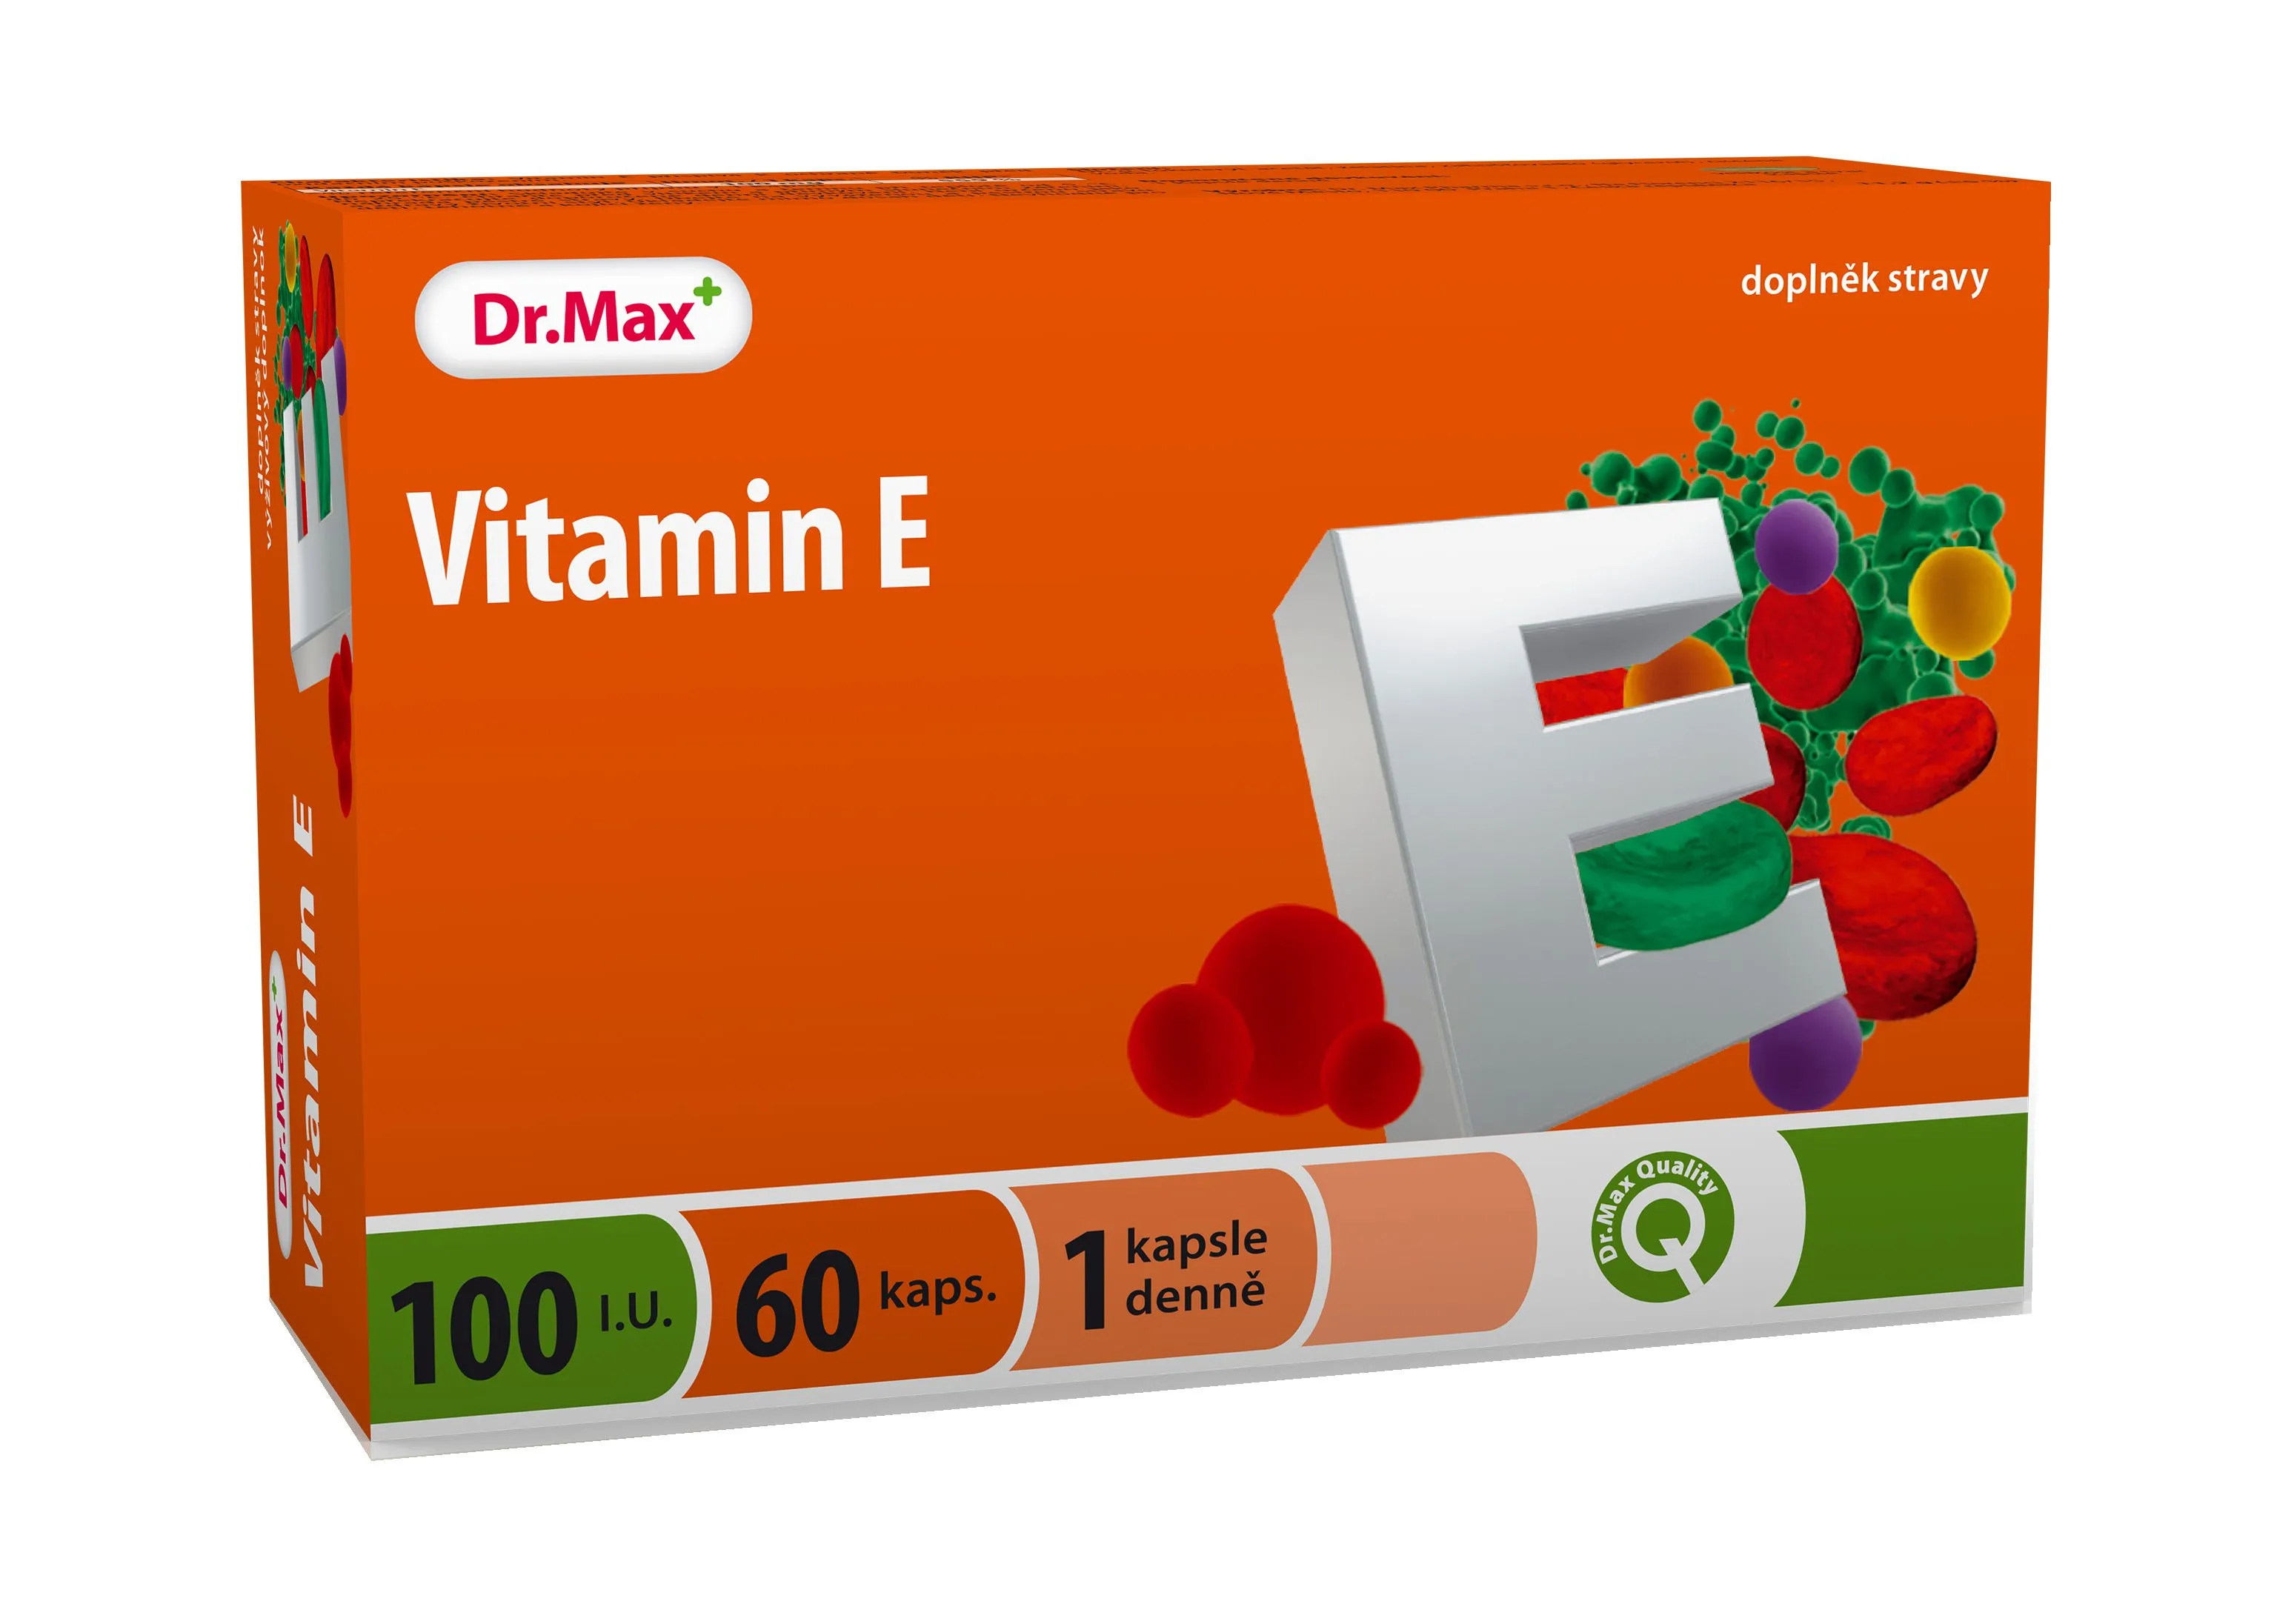 Dr. Max Vitamin E 100 I.U. 60 tobolek